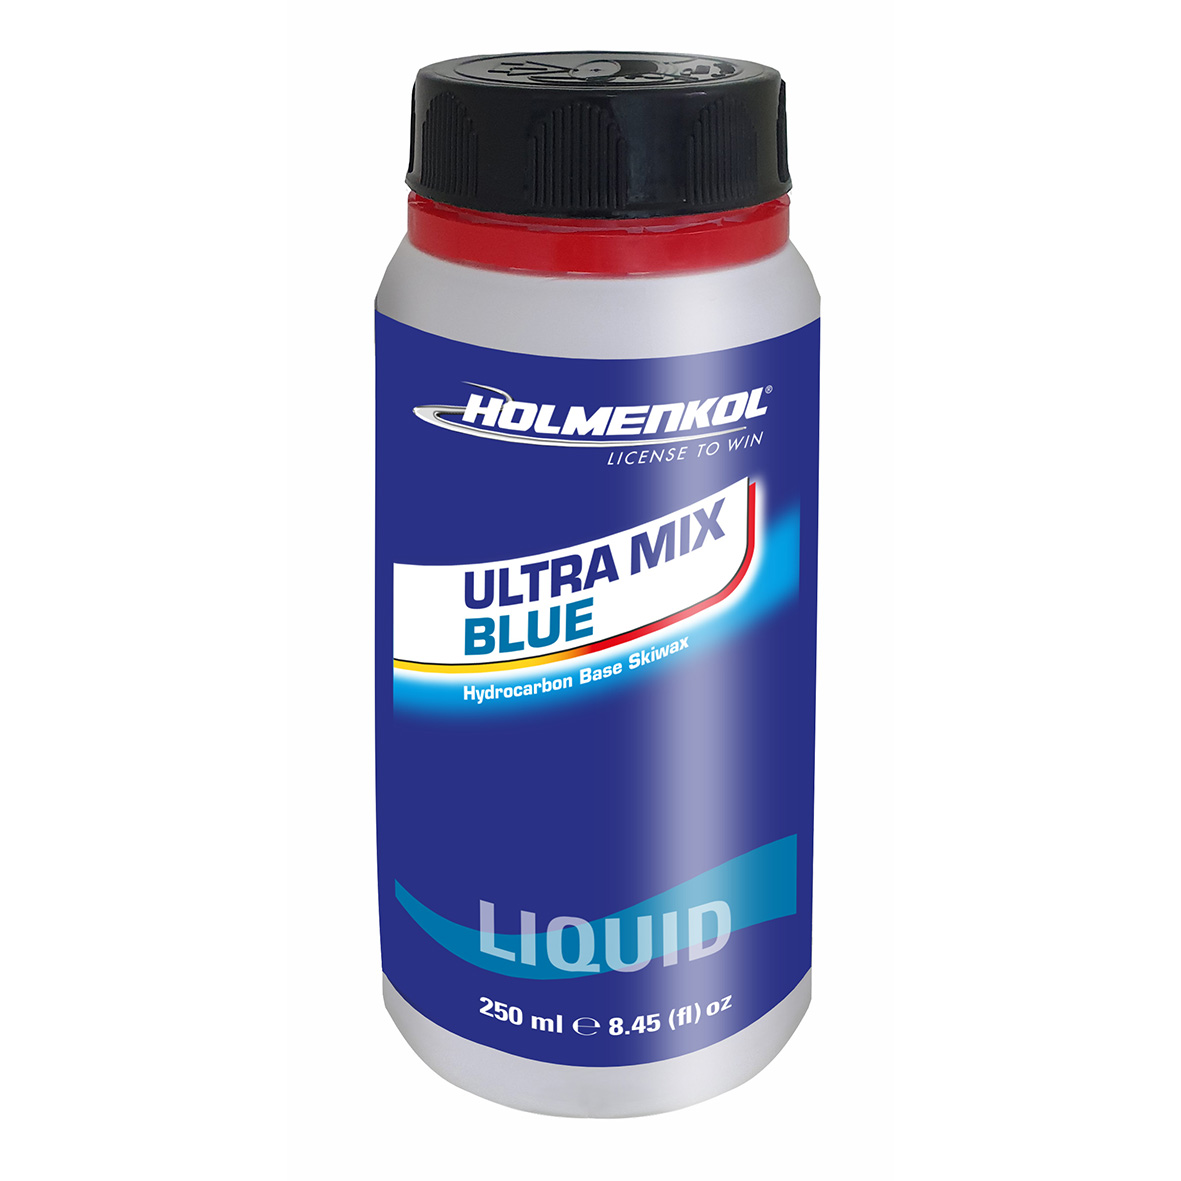 Ultra Mix Blue Liquid